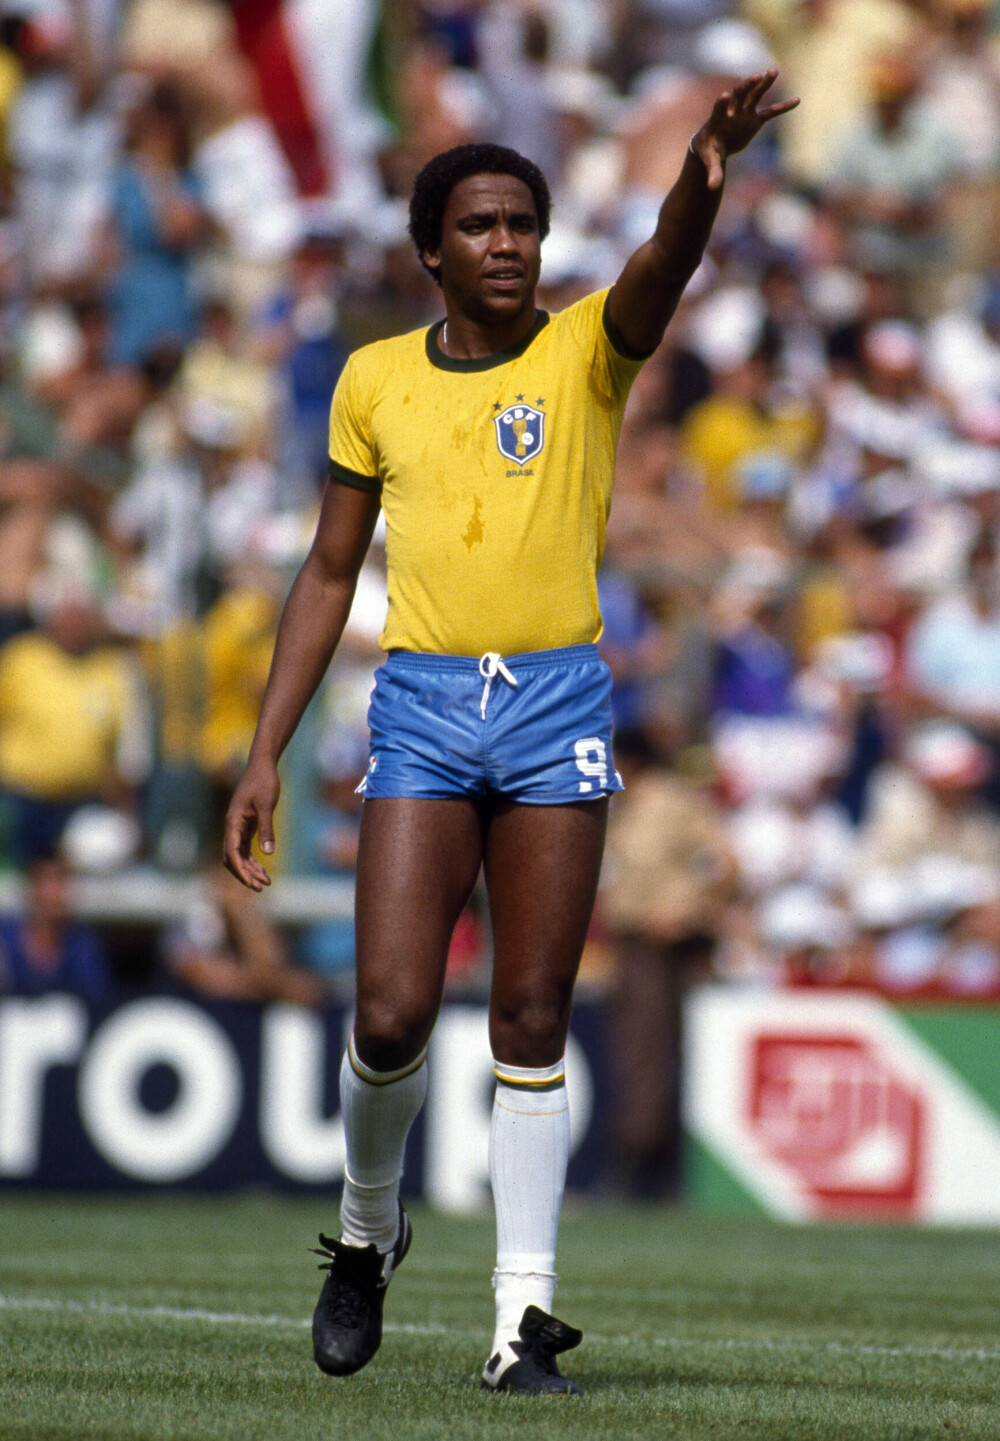 <b>TREDJEVALG:</b> Spissen Serginho ble satt inn på laget fordi stjernene Reinaldo og Careca ble skadet. Han fikk skylda for at Brasil ikke vant VM i 1982.